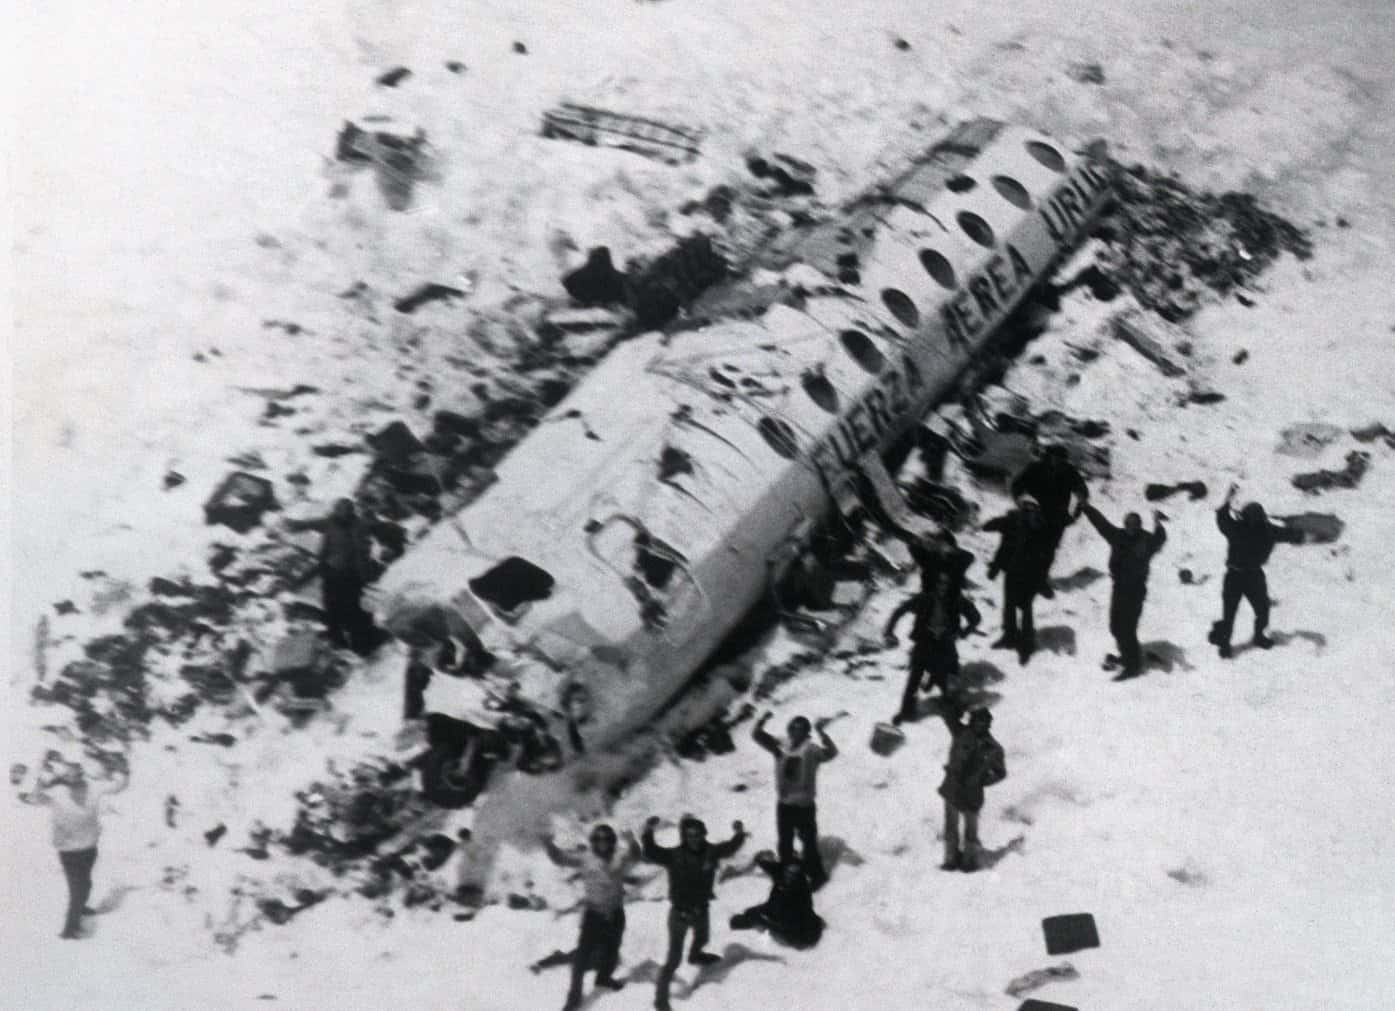 1972 andes plane crash site and survivors1